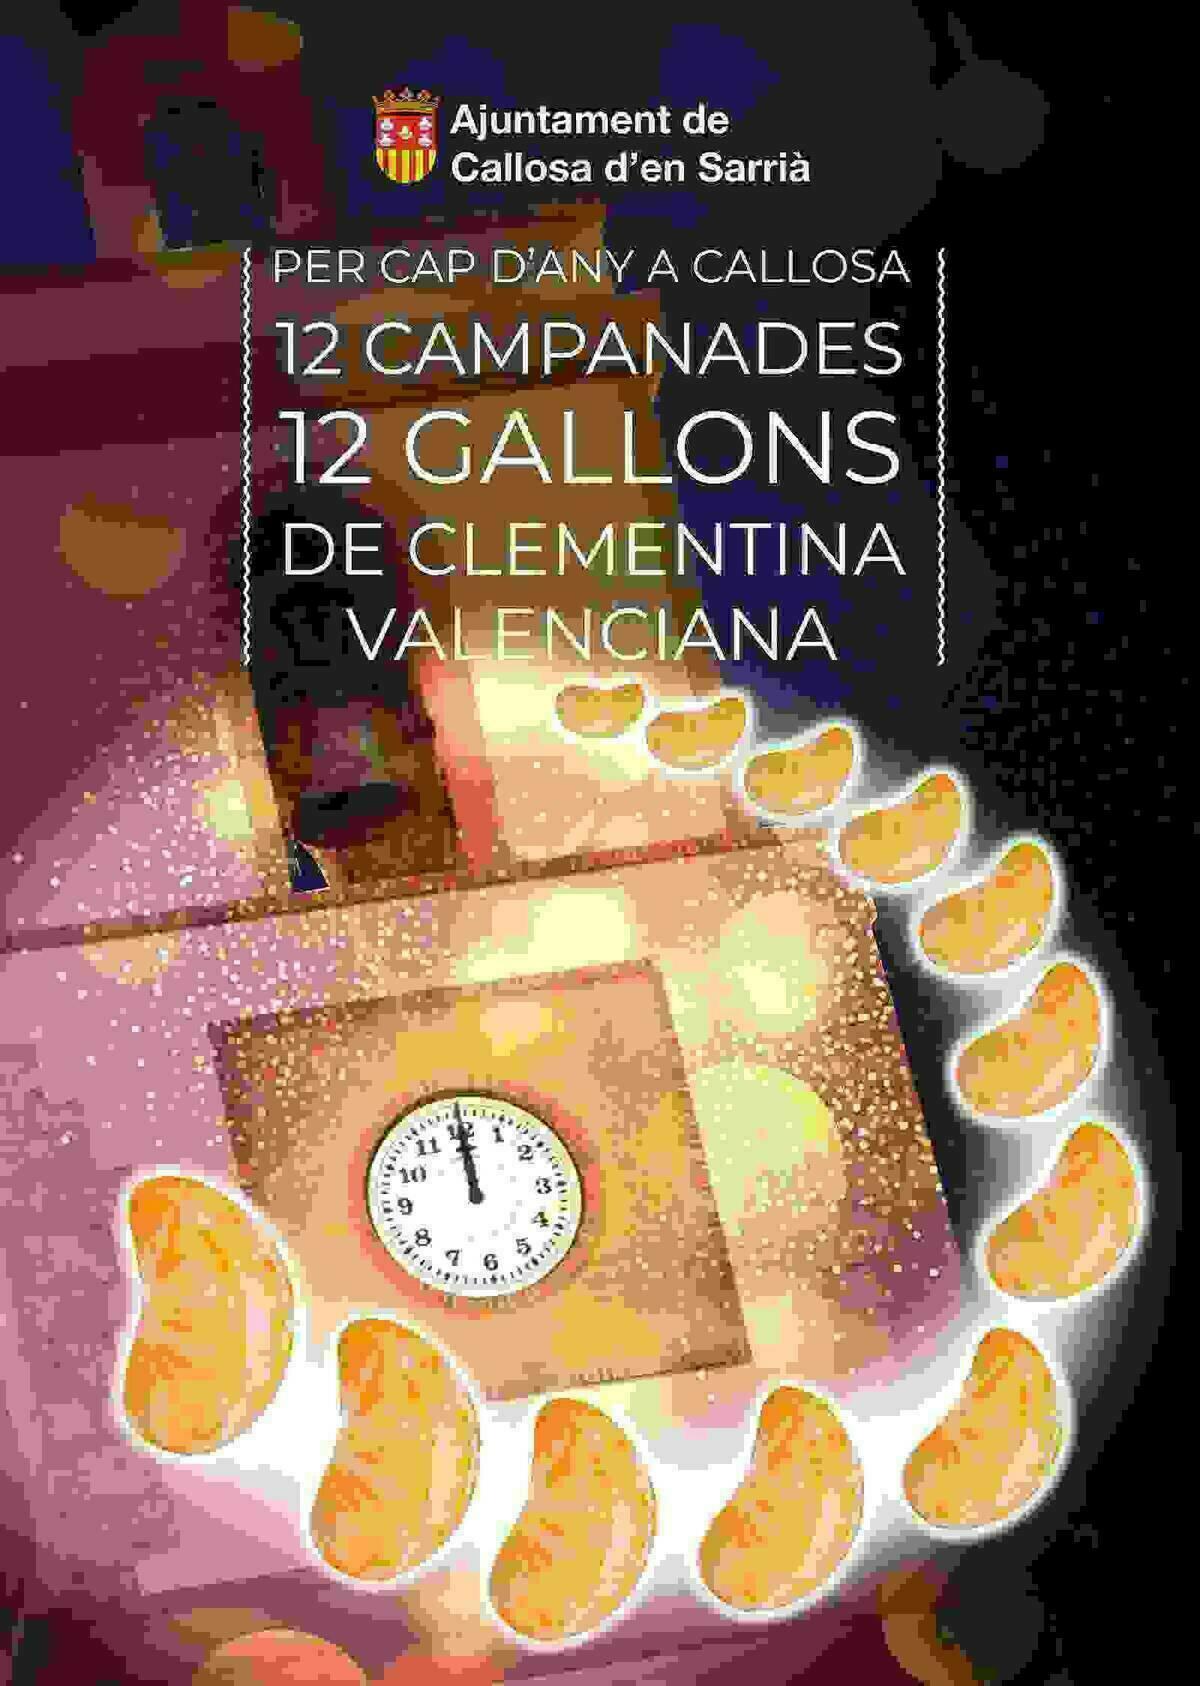 Callosa d’en Sarrià dará la bienvenida al año nuevo con gajos de clementinas en apoyo al sector citrícola valenciano